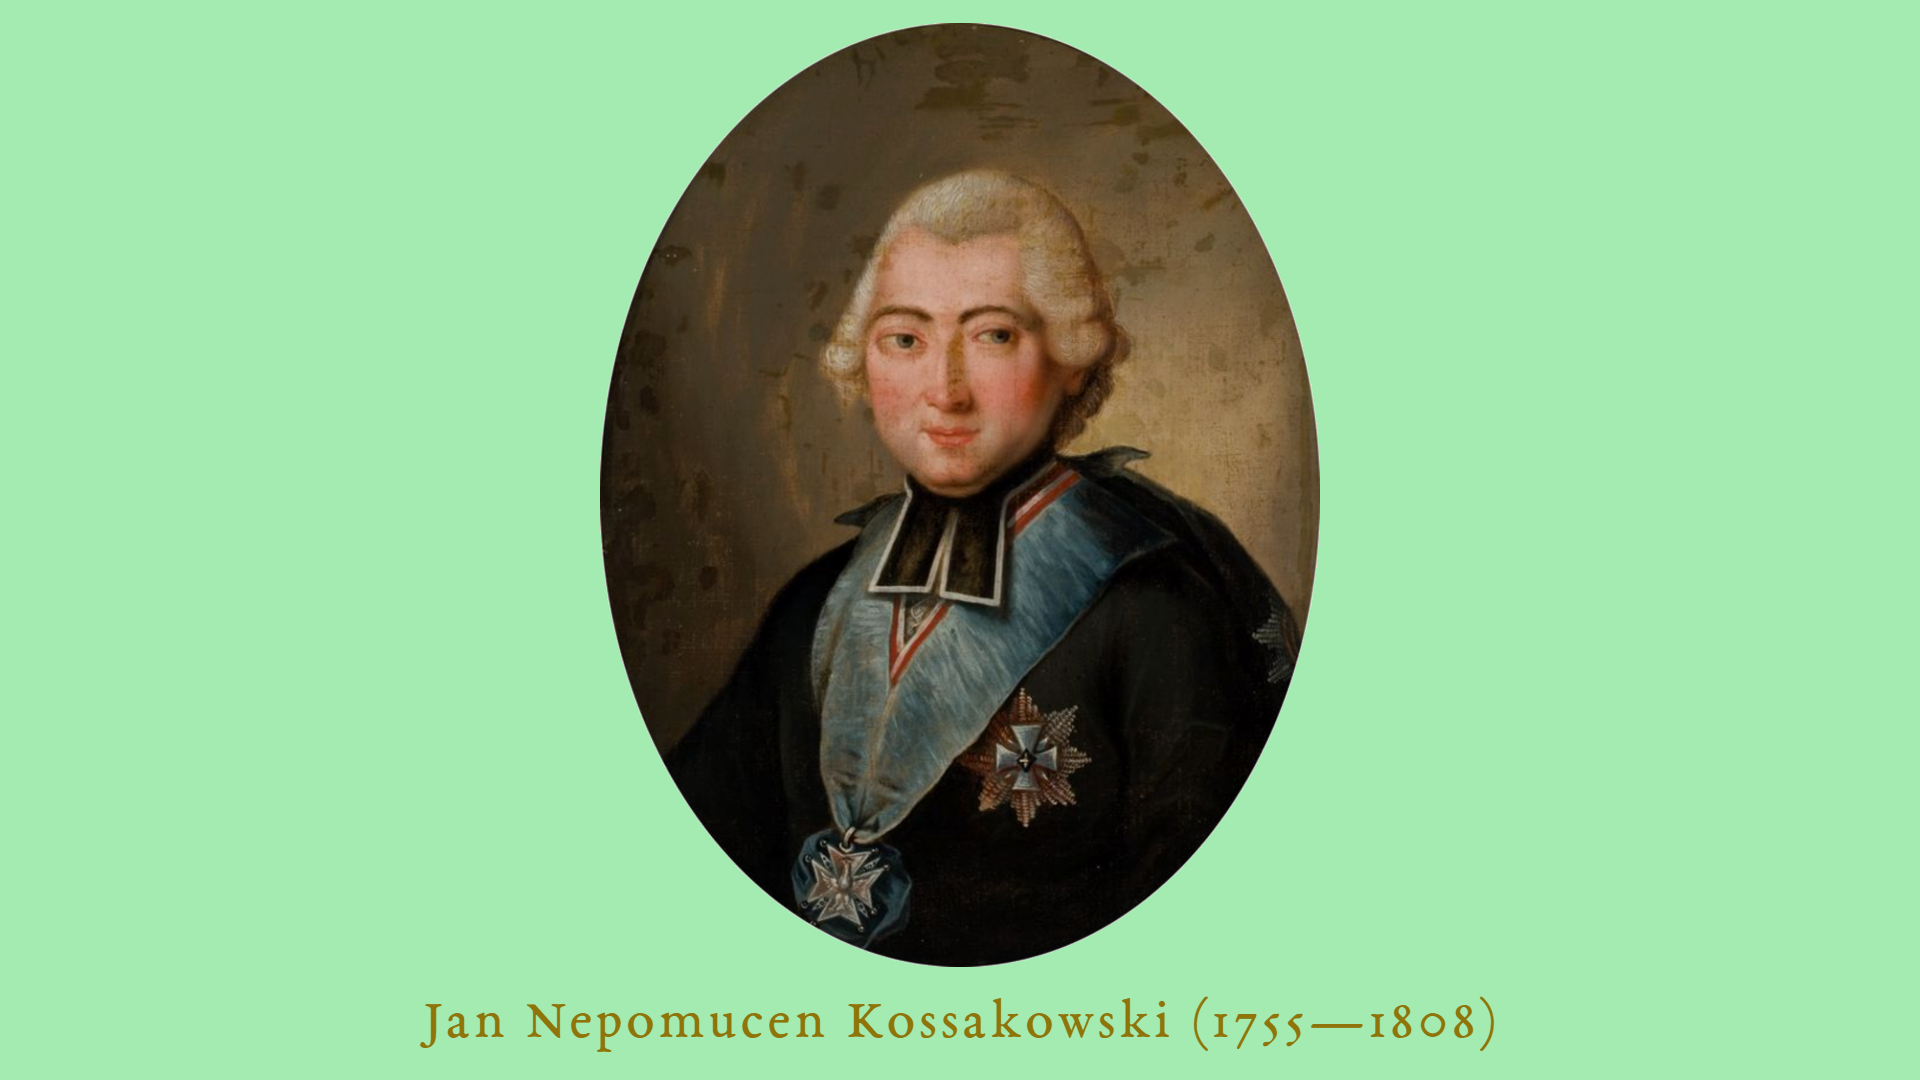 Portret biskupa Jana Napomucena Kossakowskiego (XVIII wiek) w białej peruce z orderami - portret jest owalny na seledynowym tle